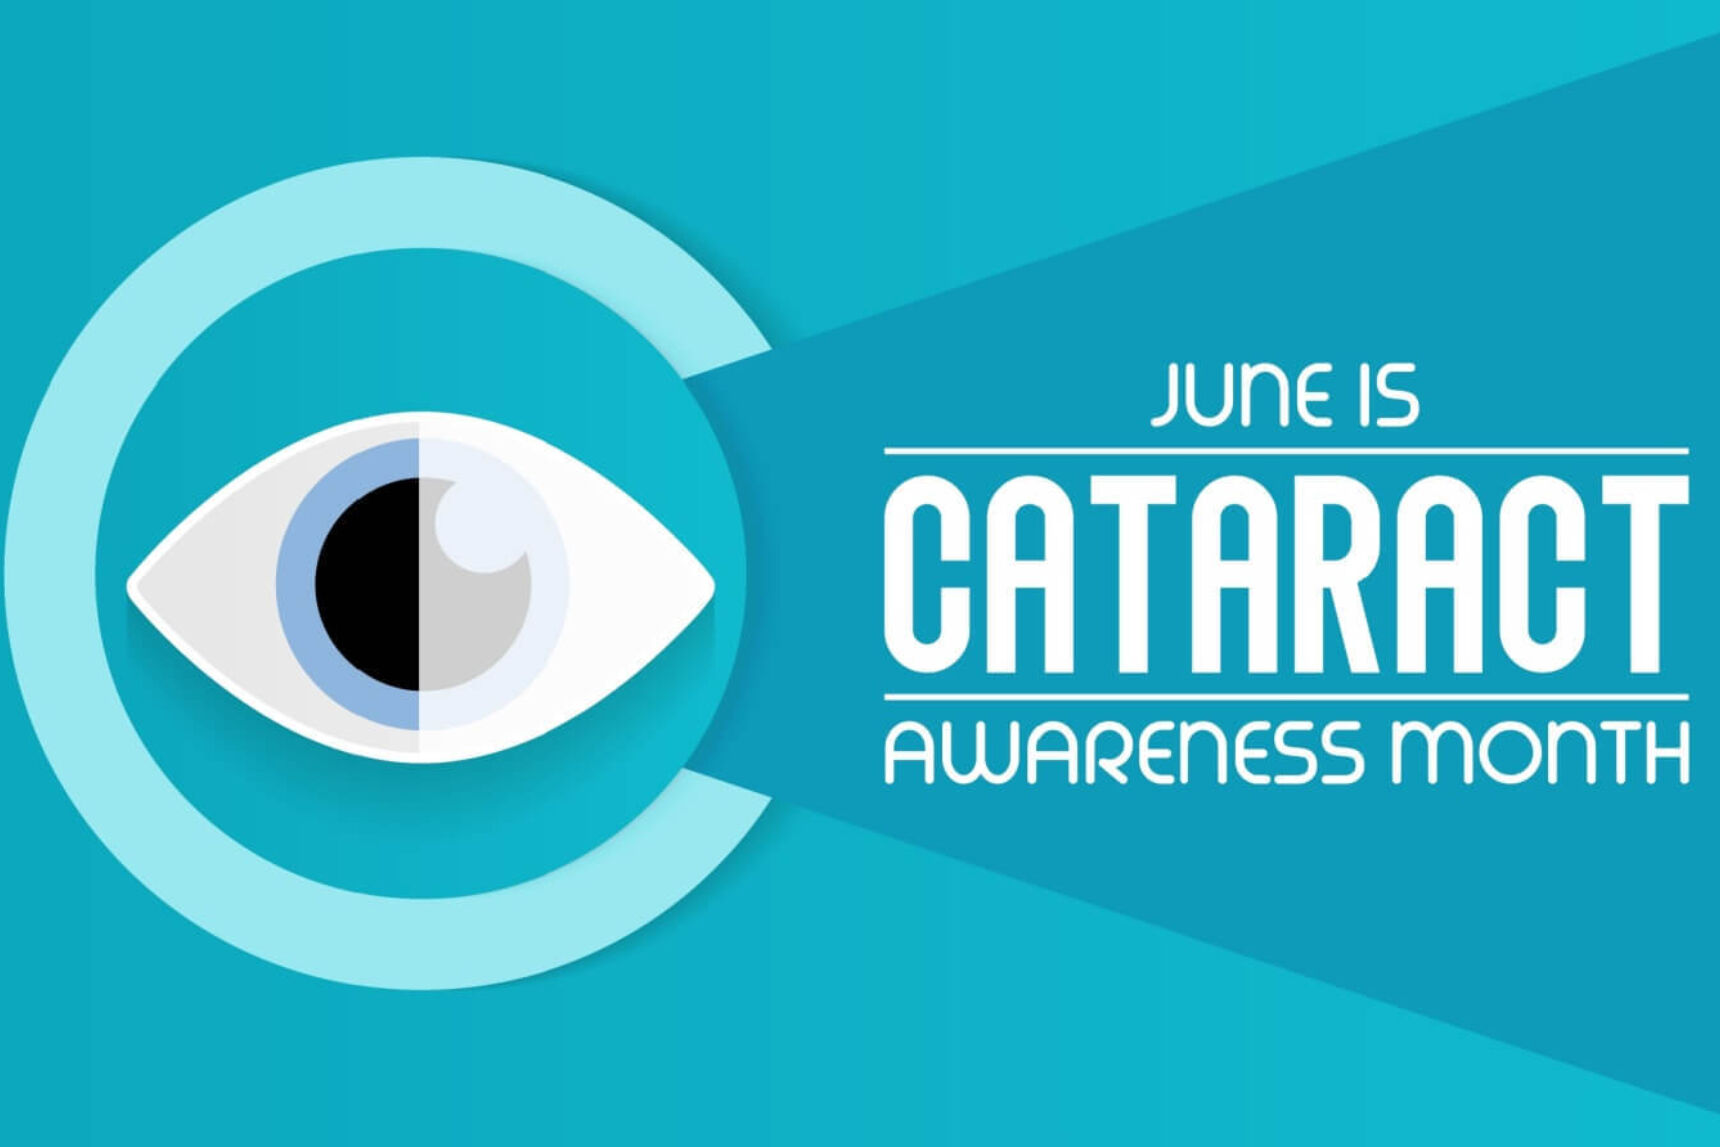 Cataract awareness